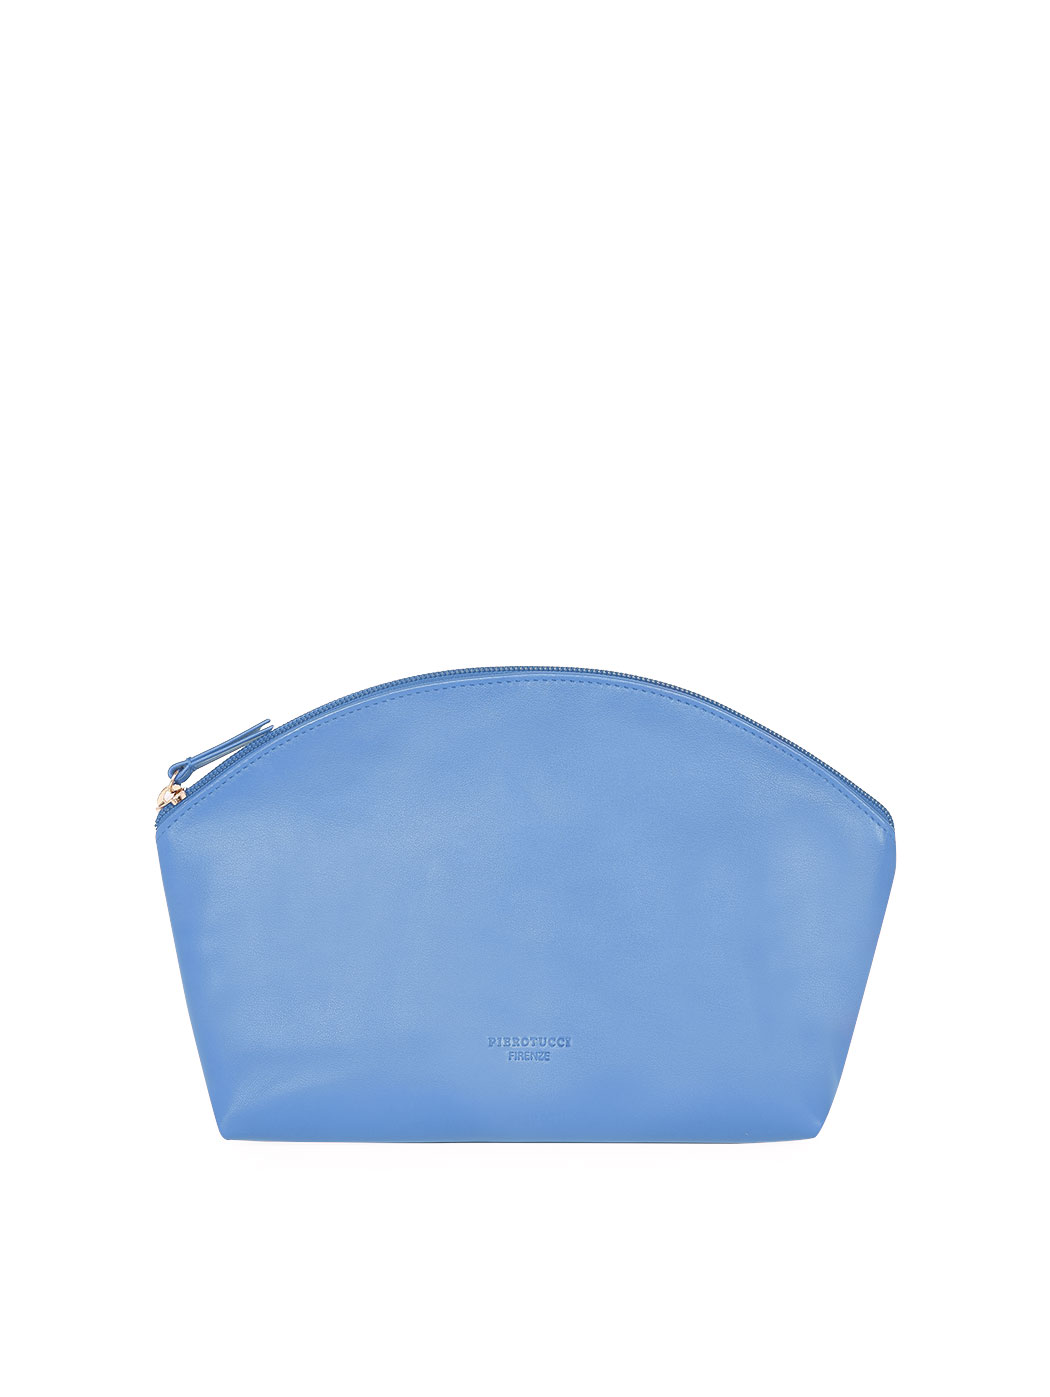 Кожаный клатч на ремне светло - голубого цвета